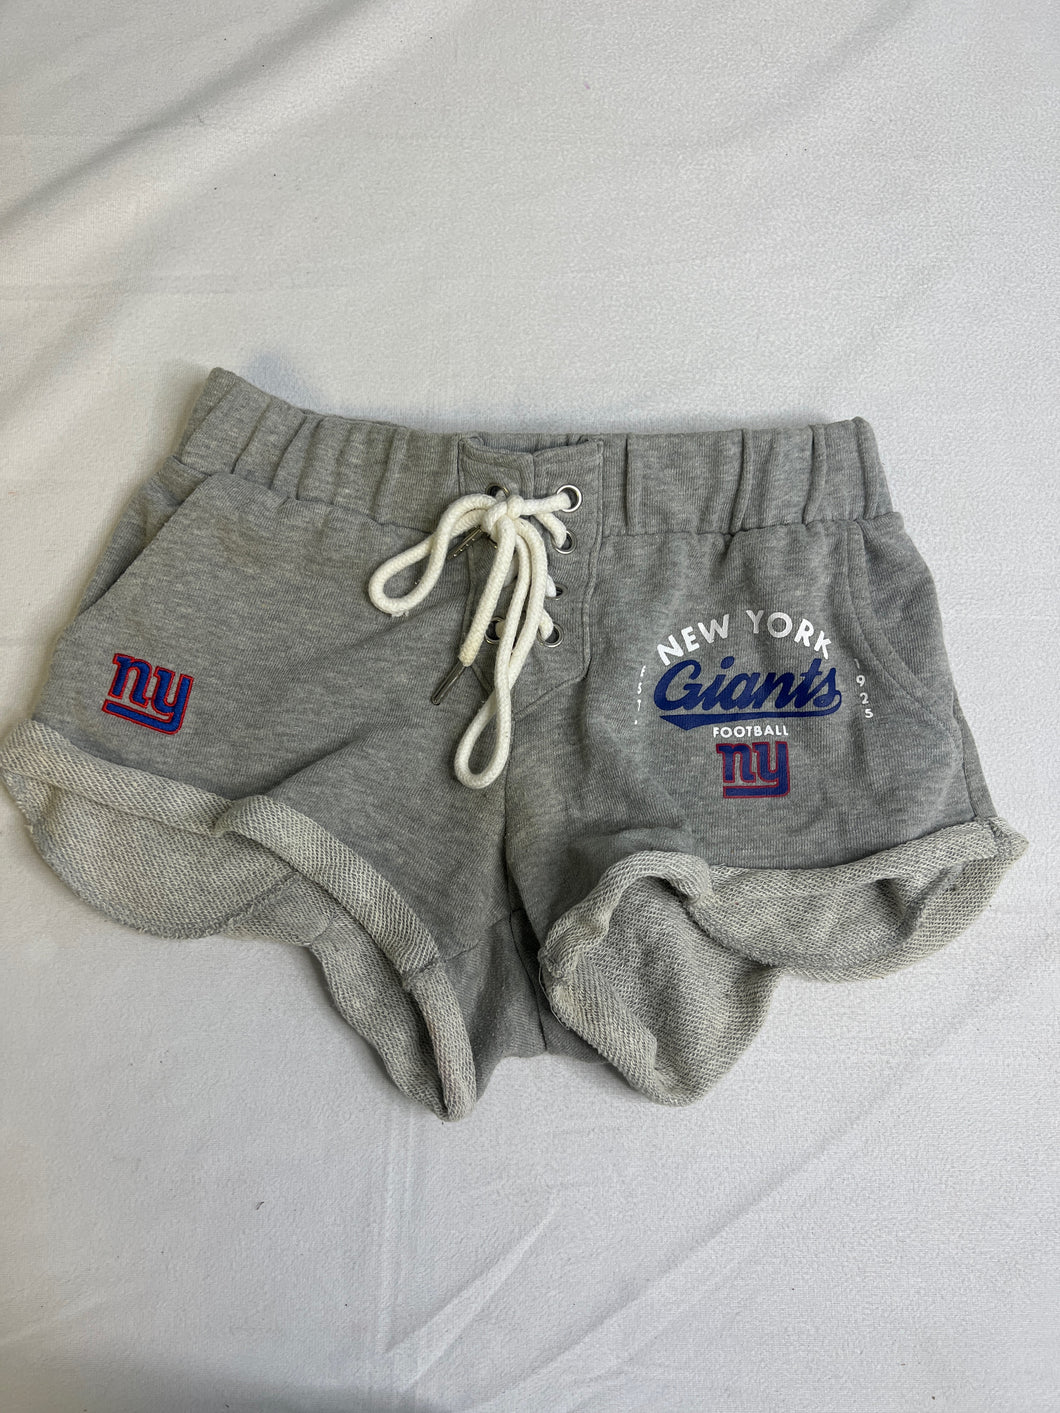 Womens Size S NFL NY Giants Shorts